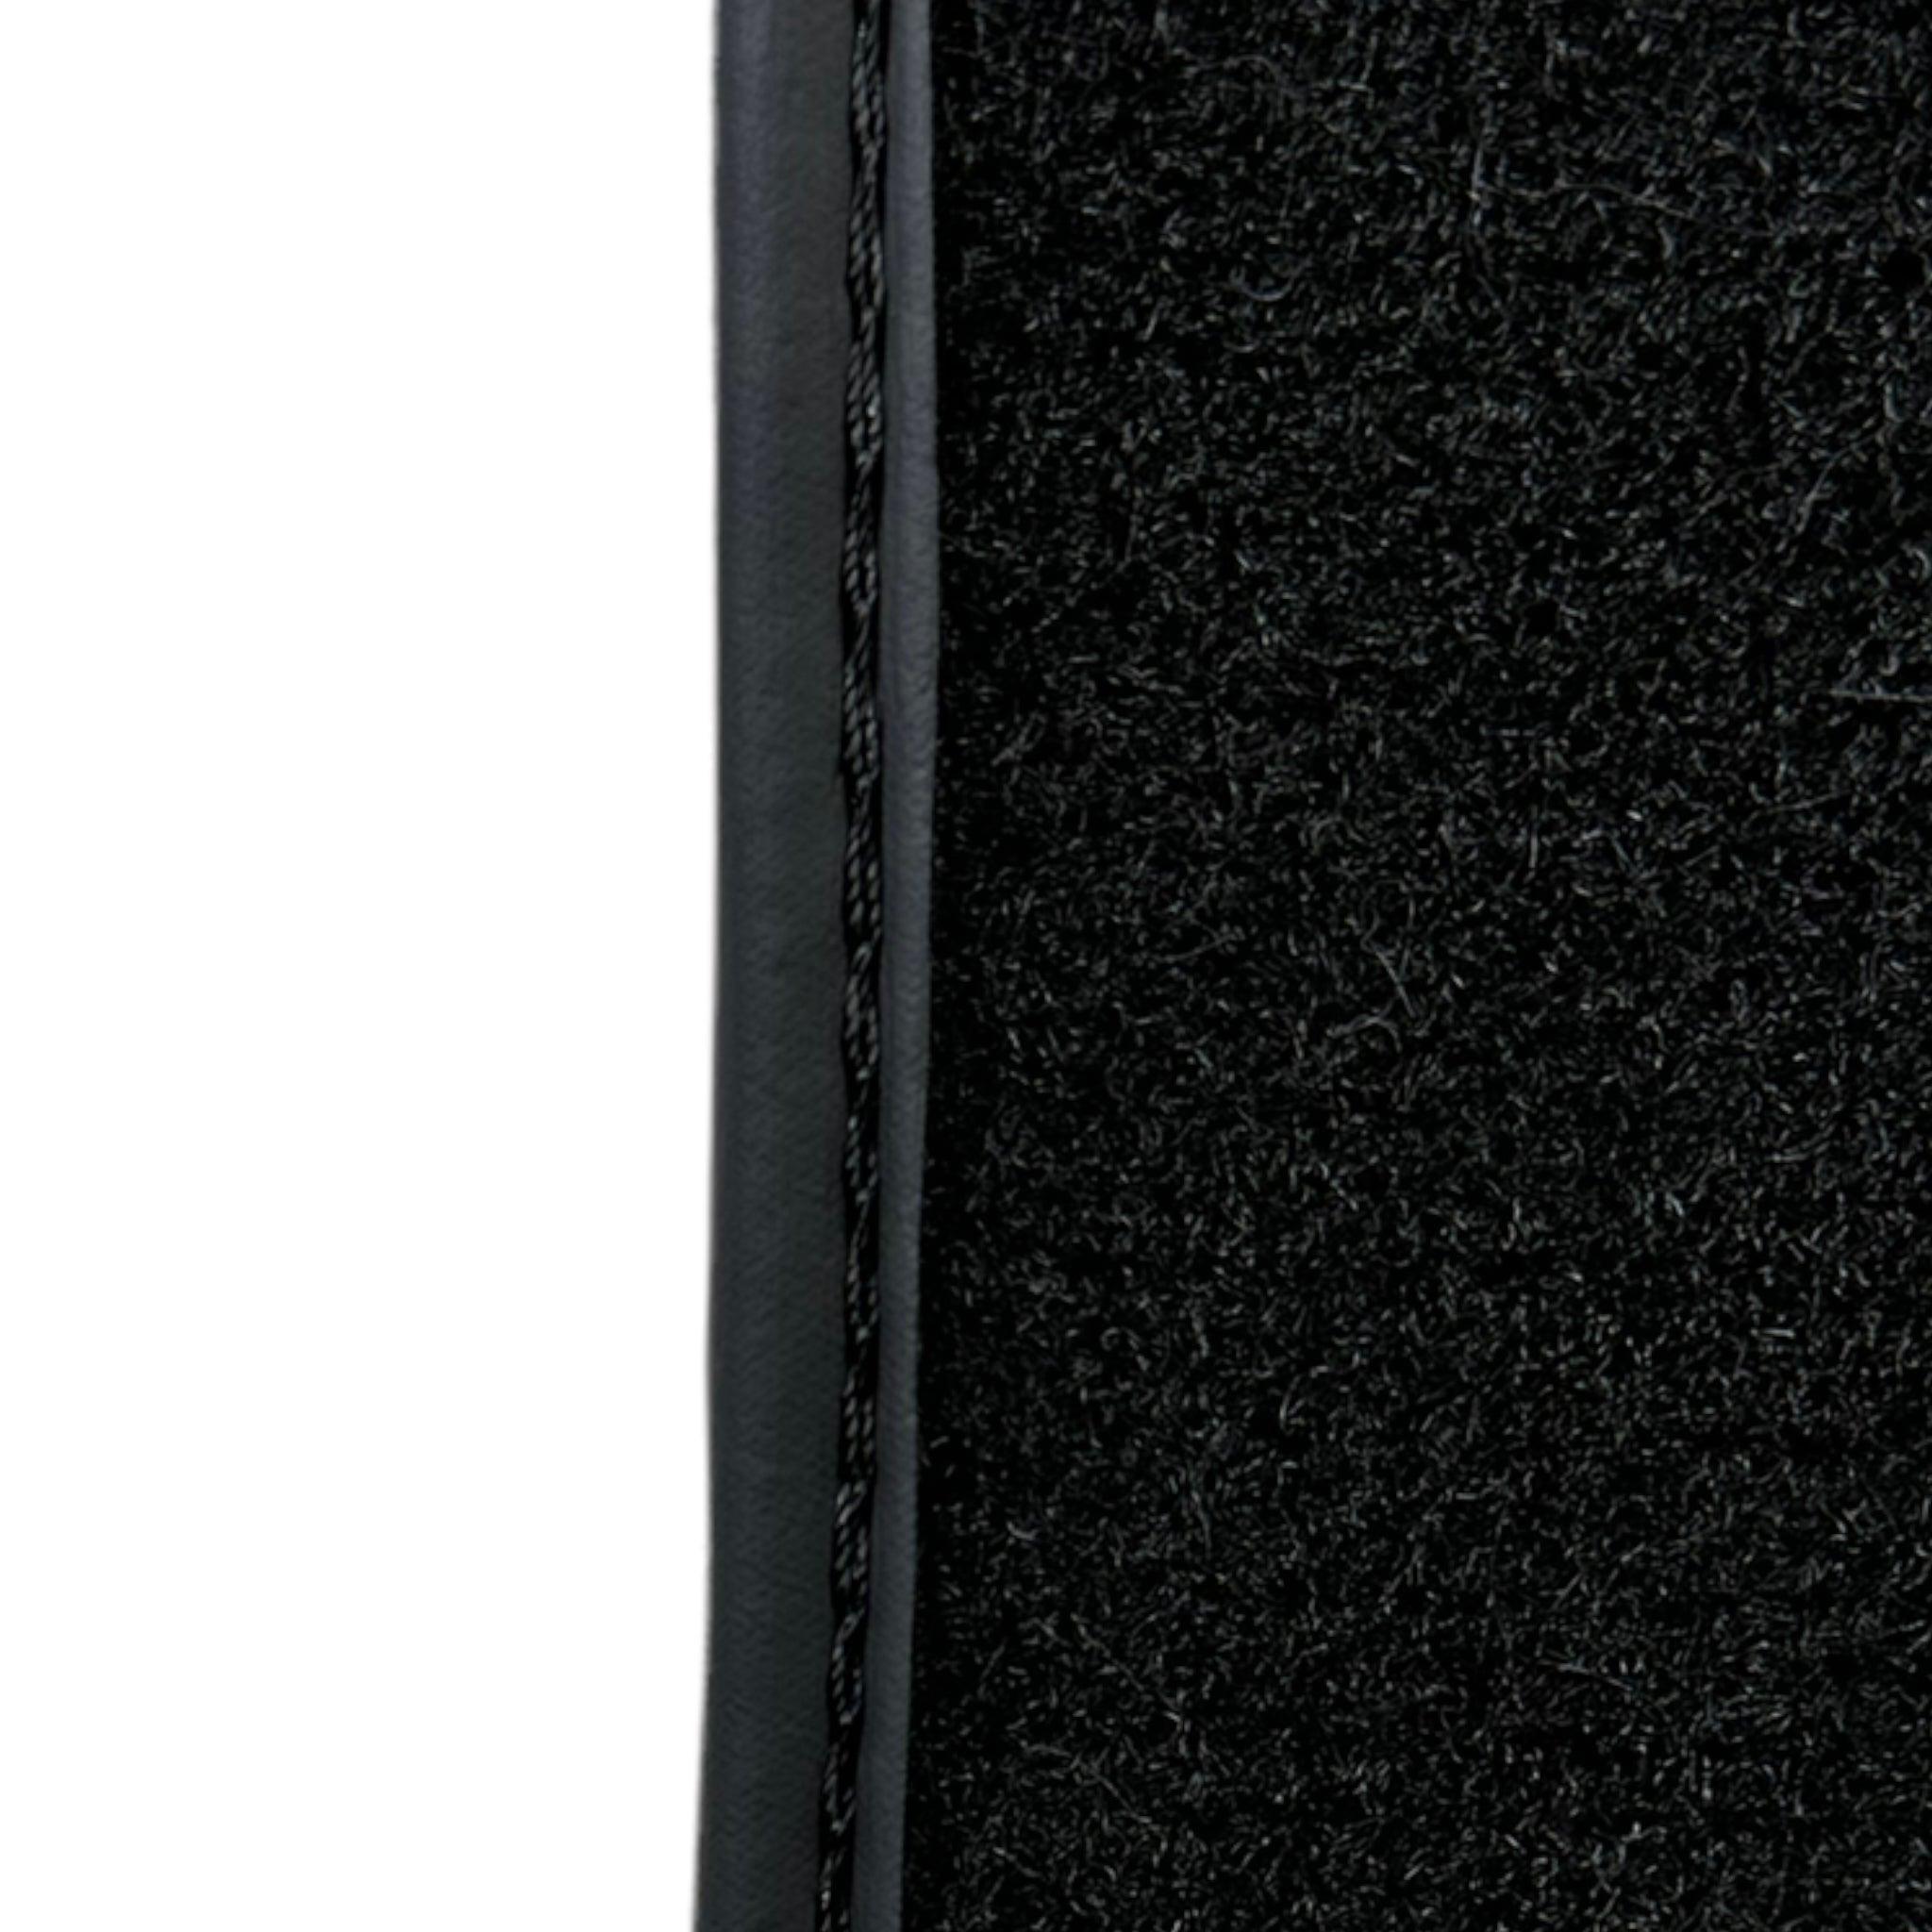 Black Sheepskin Floor Mats For BMW M3 E46 ER56 Design